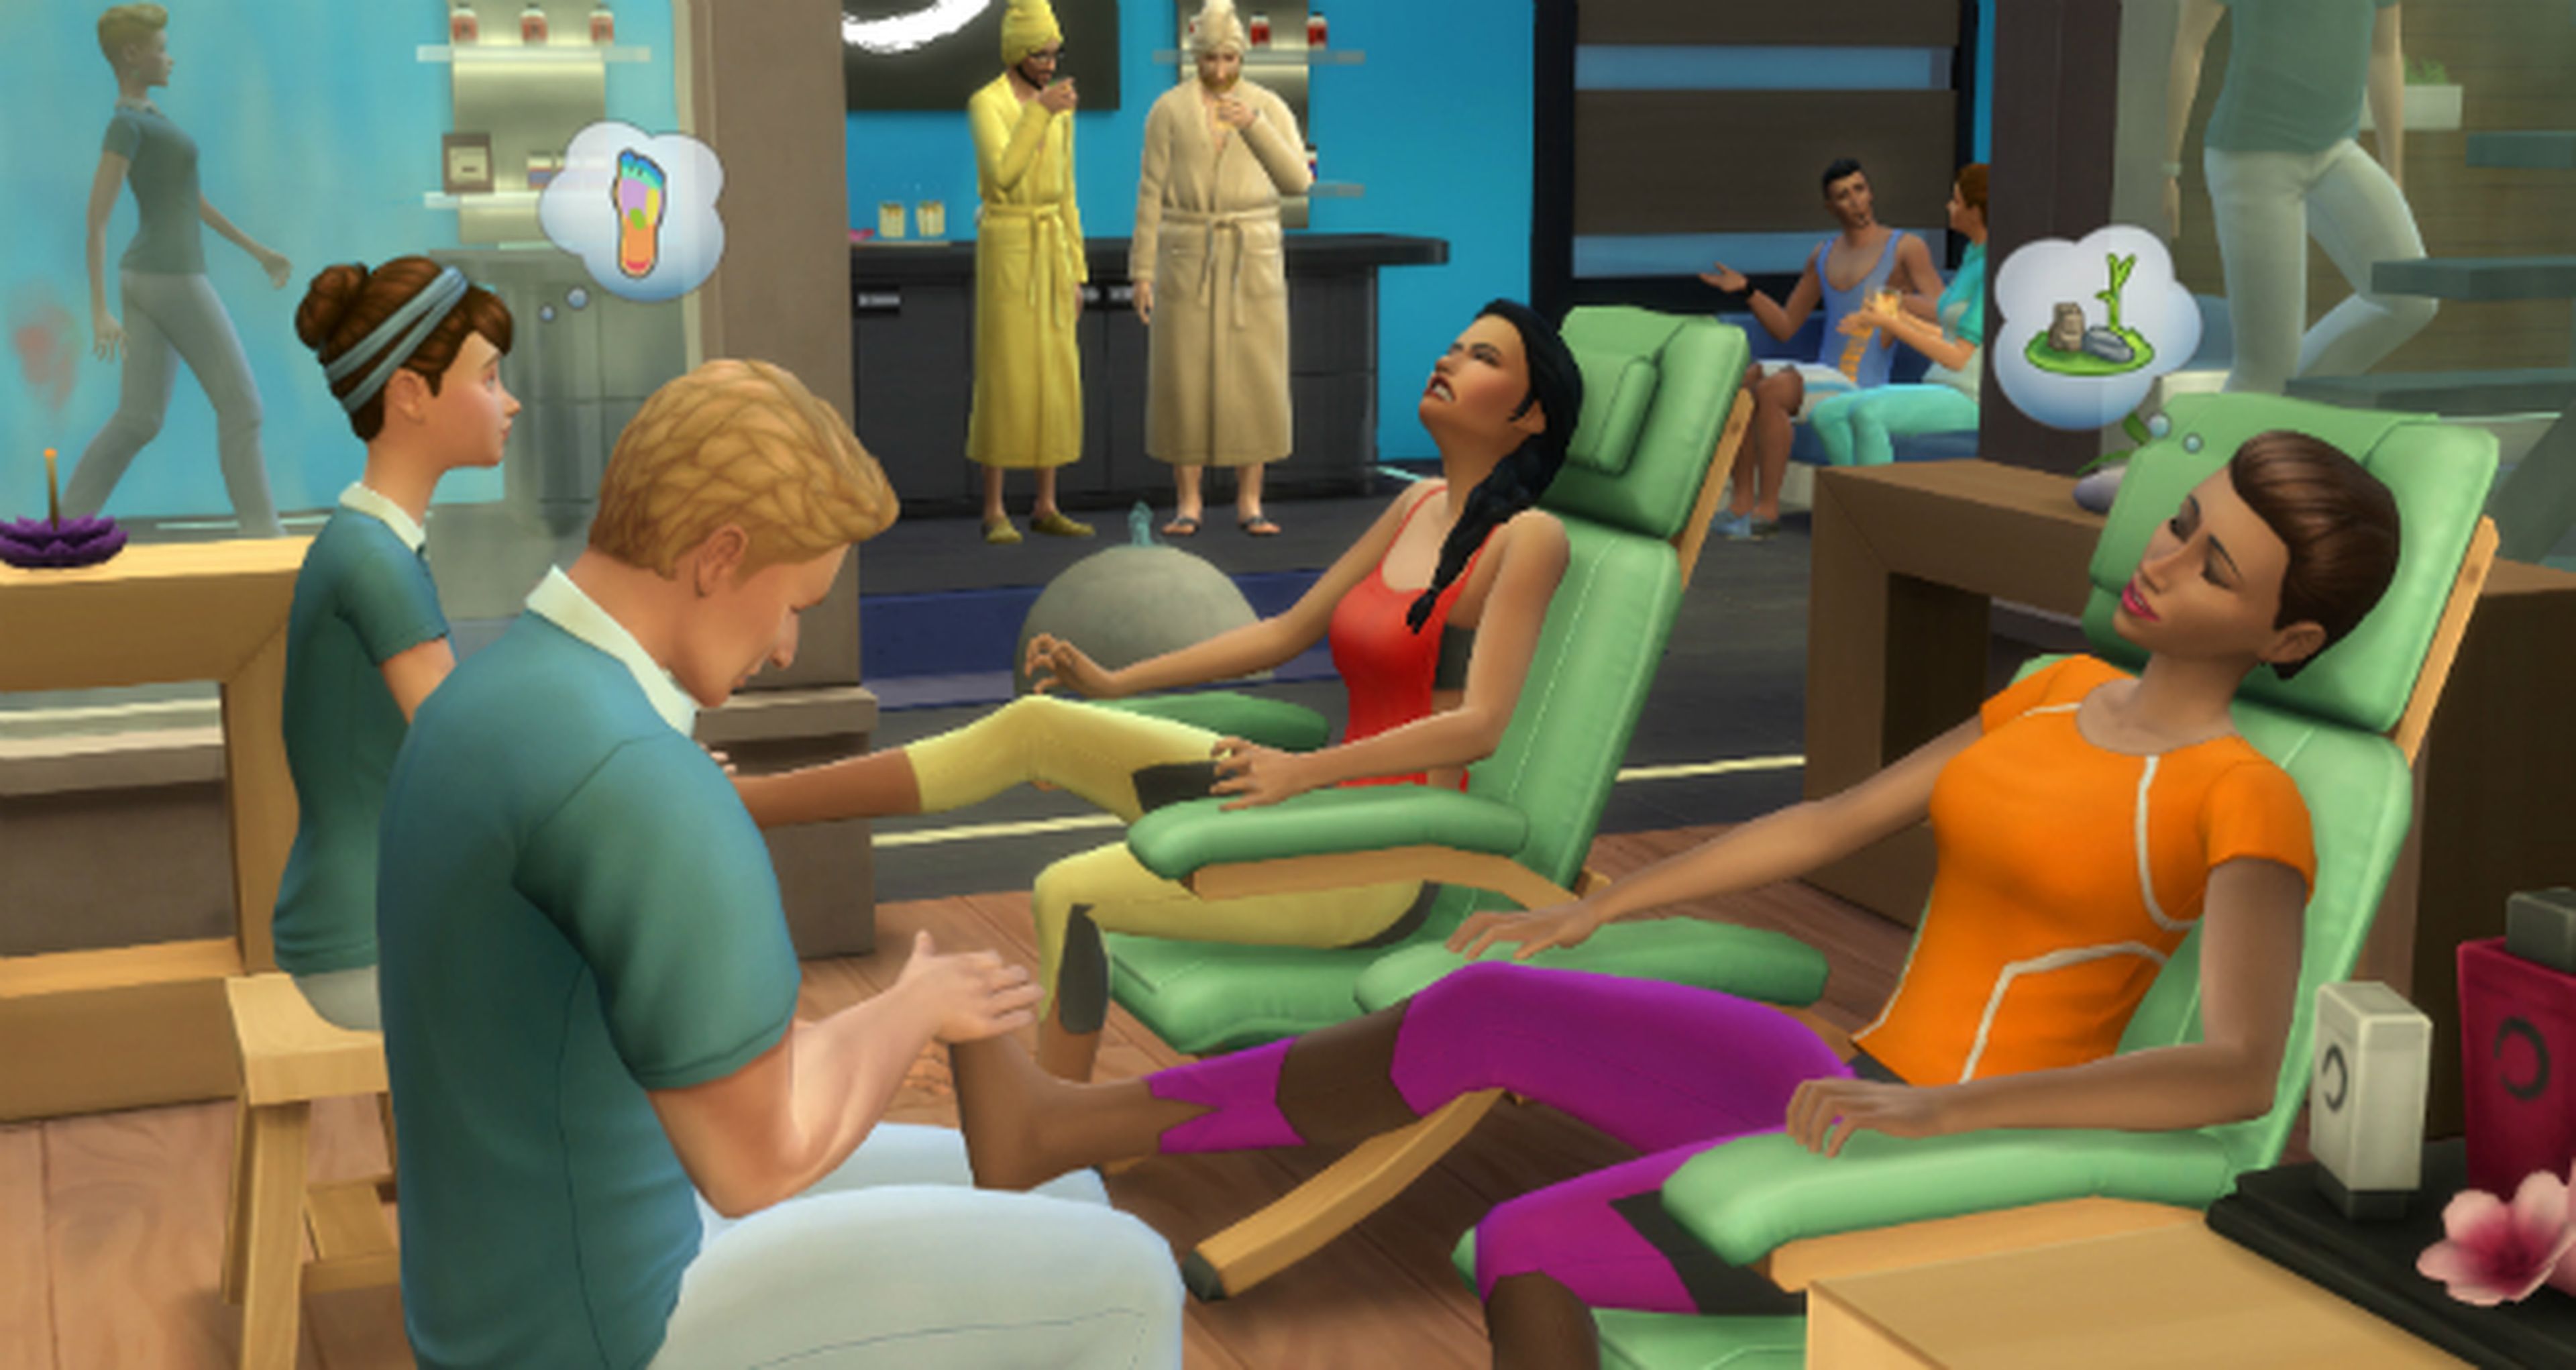 Los Sims 4, Día de Spa es el próximo pack de contenidos